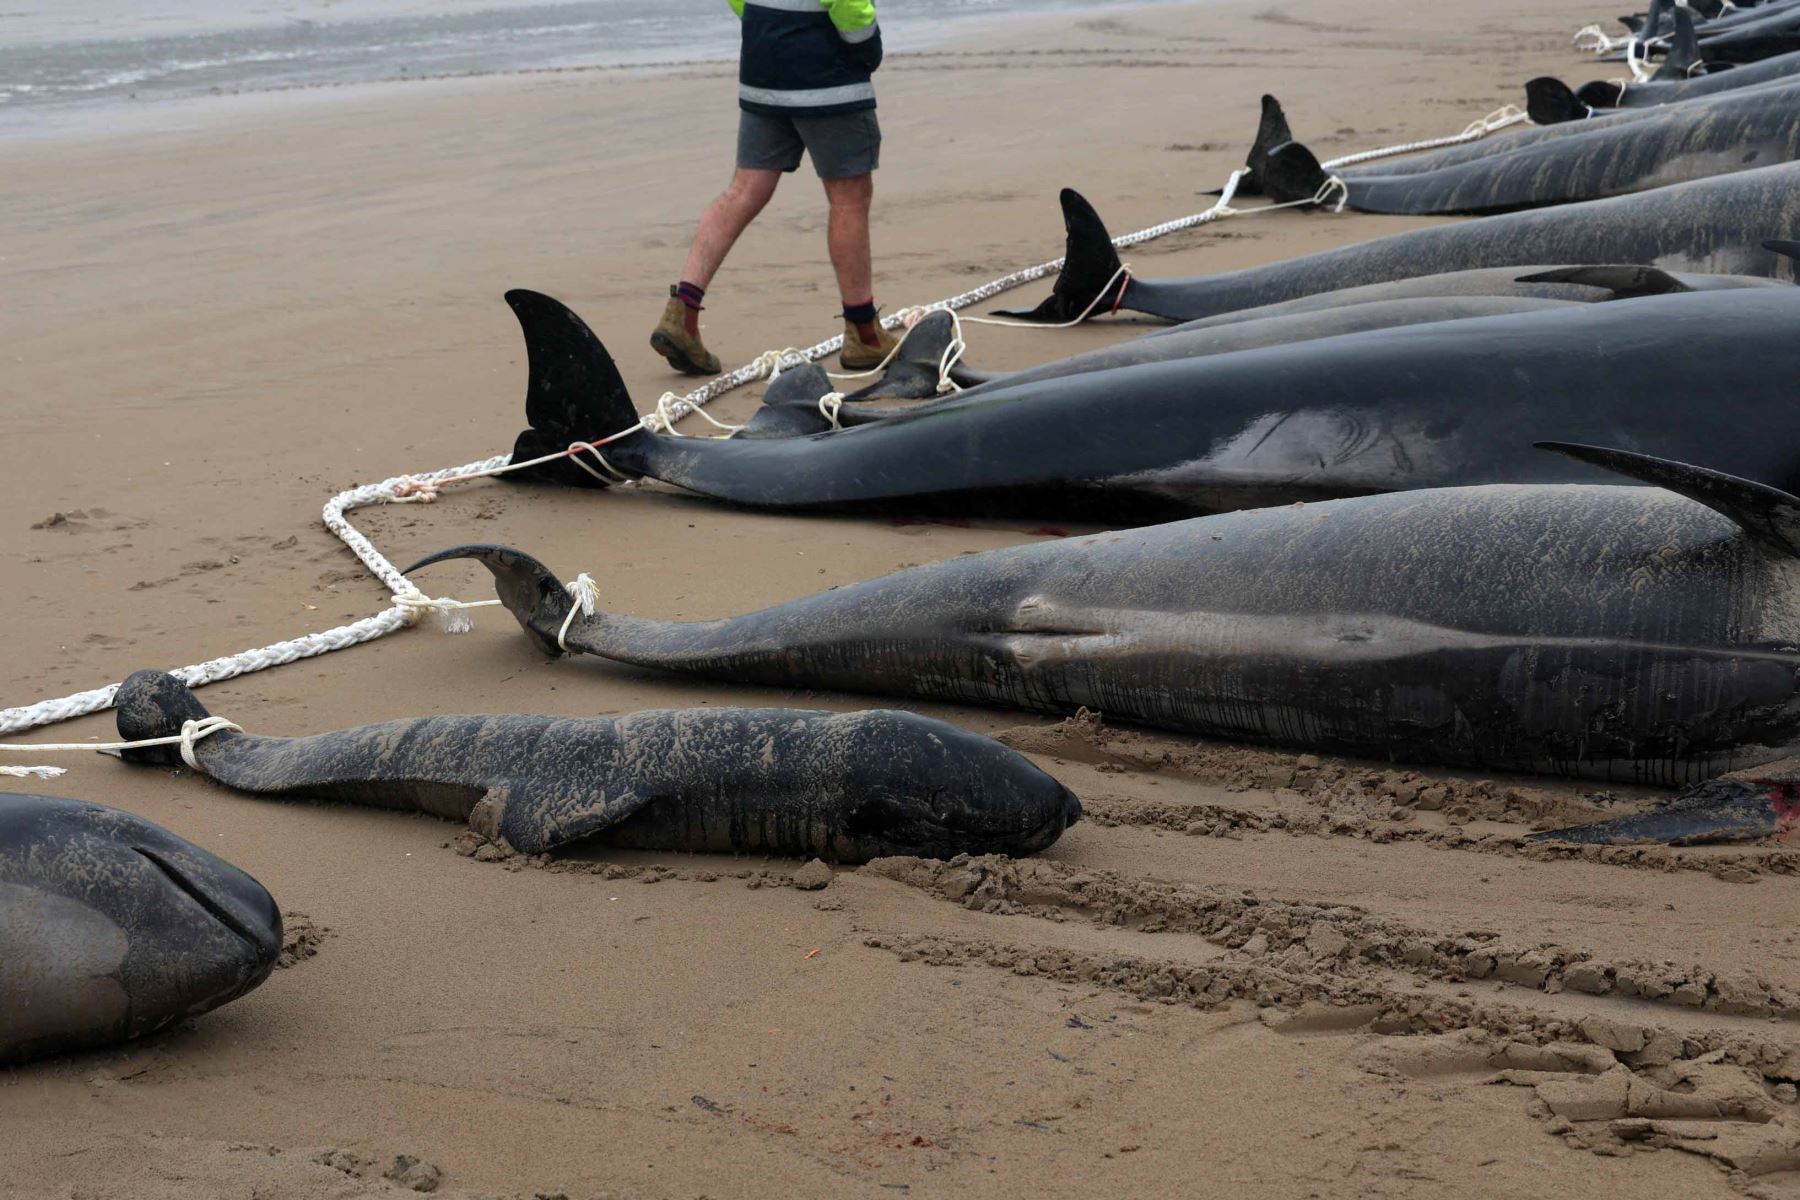 Alrededor de 200 ballenas piloto murieron en una playa de la bahía de Macquarie, en el oeste de la isla australiana de Tasmania, y 35 fueron rescatadas con vida después del varamiento masivo ocurrido la víspera en este remoto lugar, informaron este jueves las autoridades del país oceánico